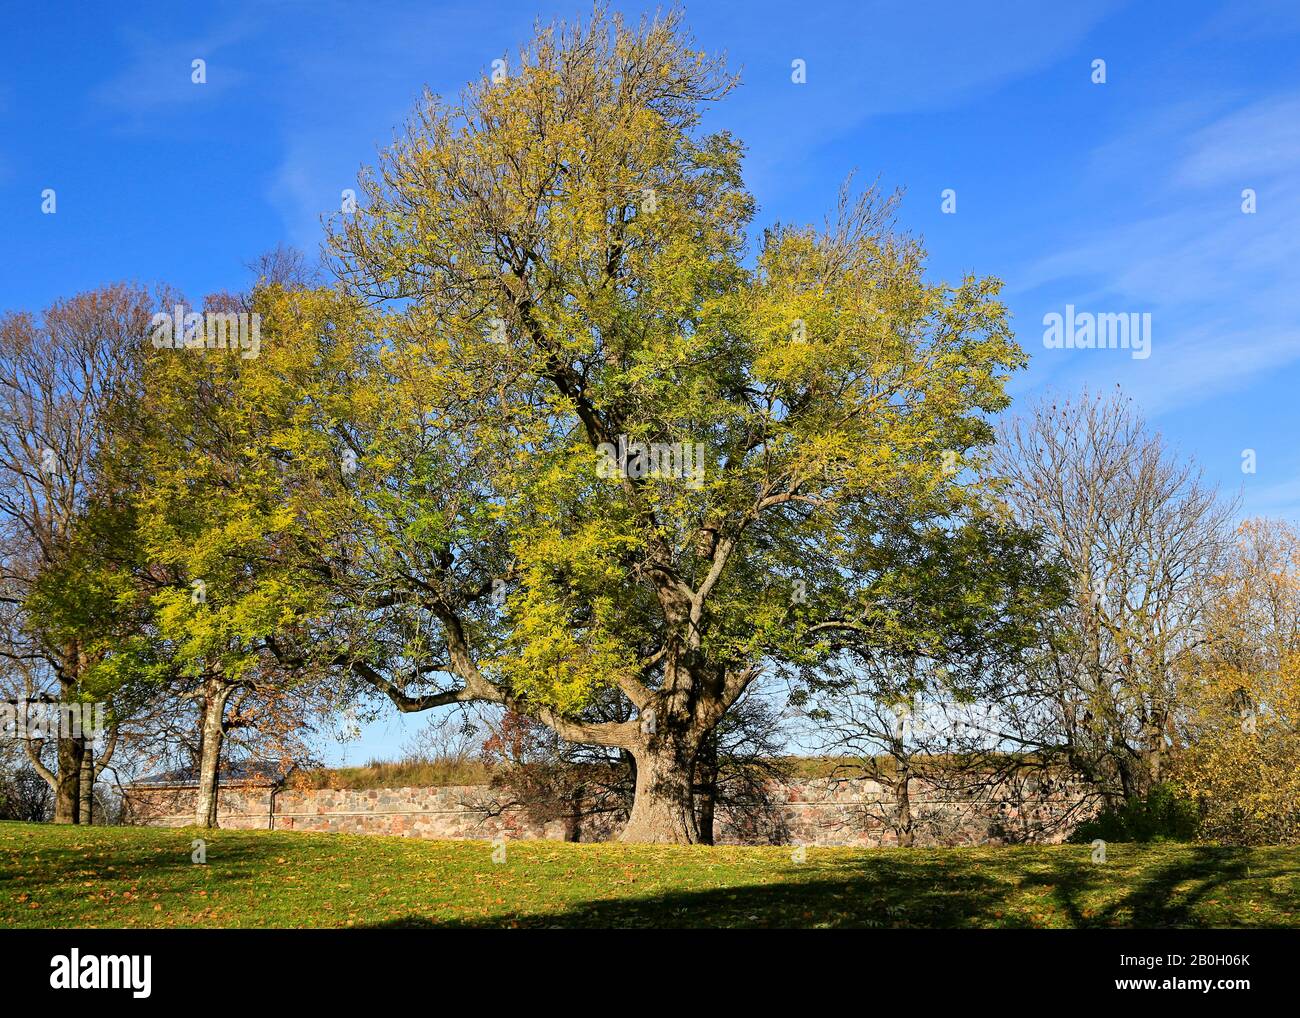 Grand arbre européen des cendres, Fraxinus excelsior, dans une belle journée ensoleillée de l'automne. Suomenlinna, Helsinki, Finlande. Octobre 2019. Banque D'Images